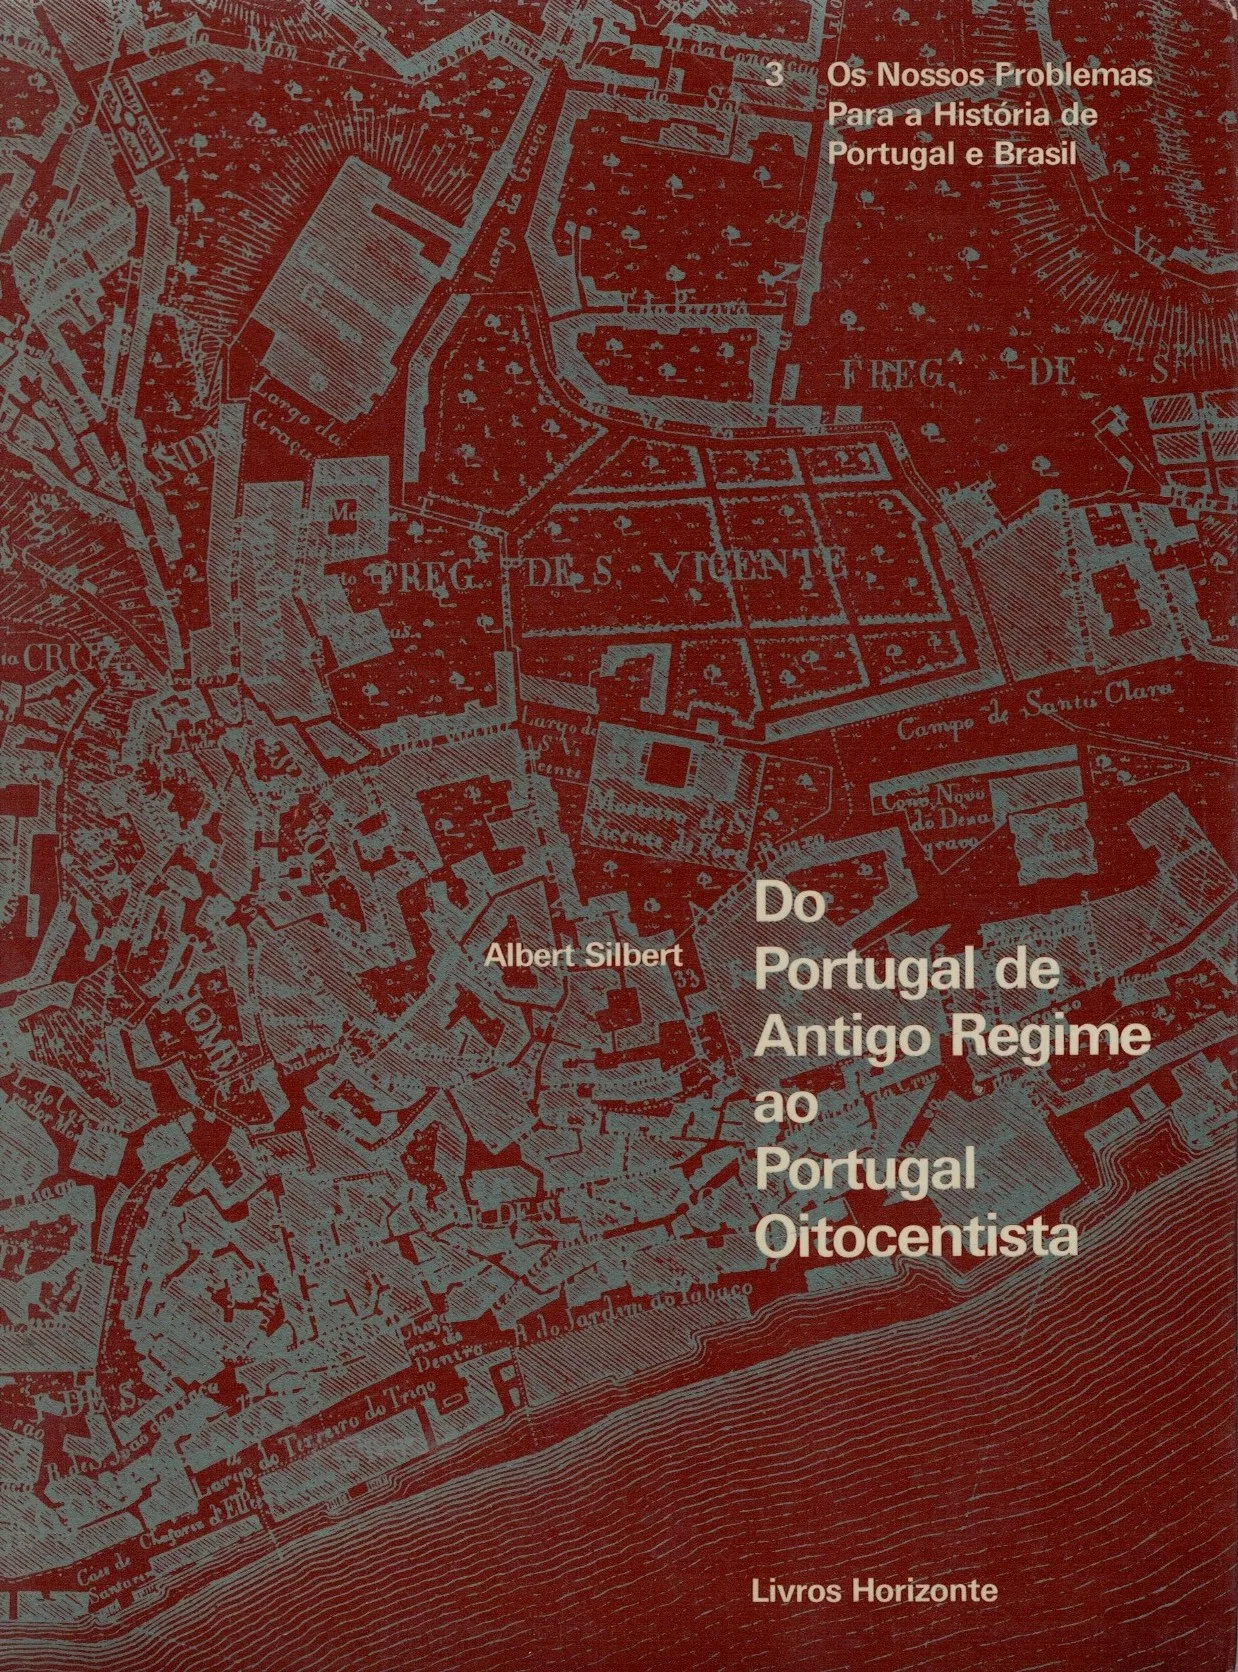 Portugal de Antigo Regime ao Portugal Oitocentista de Albert Silbert.